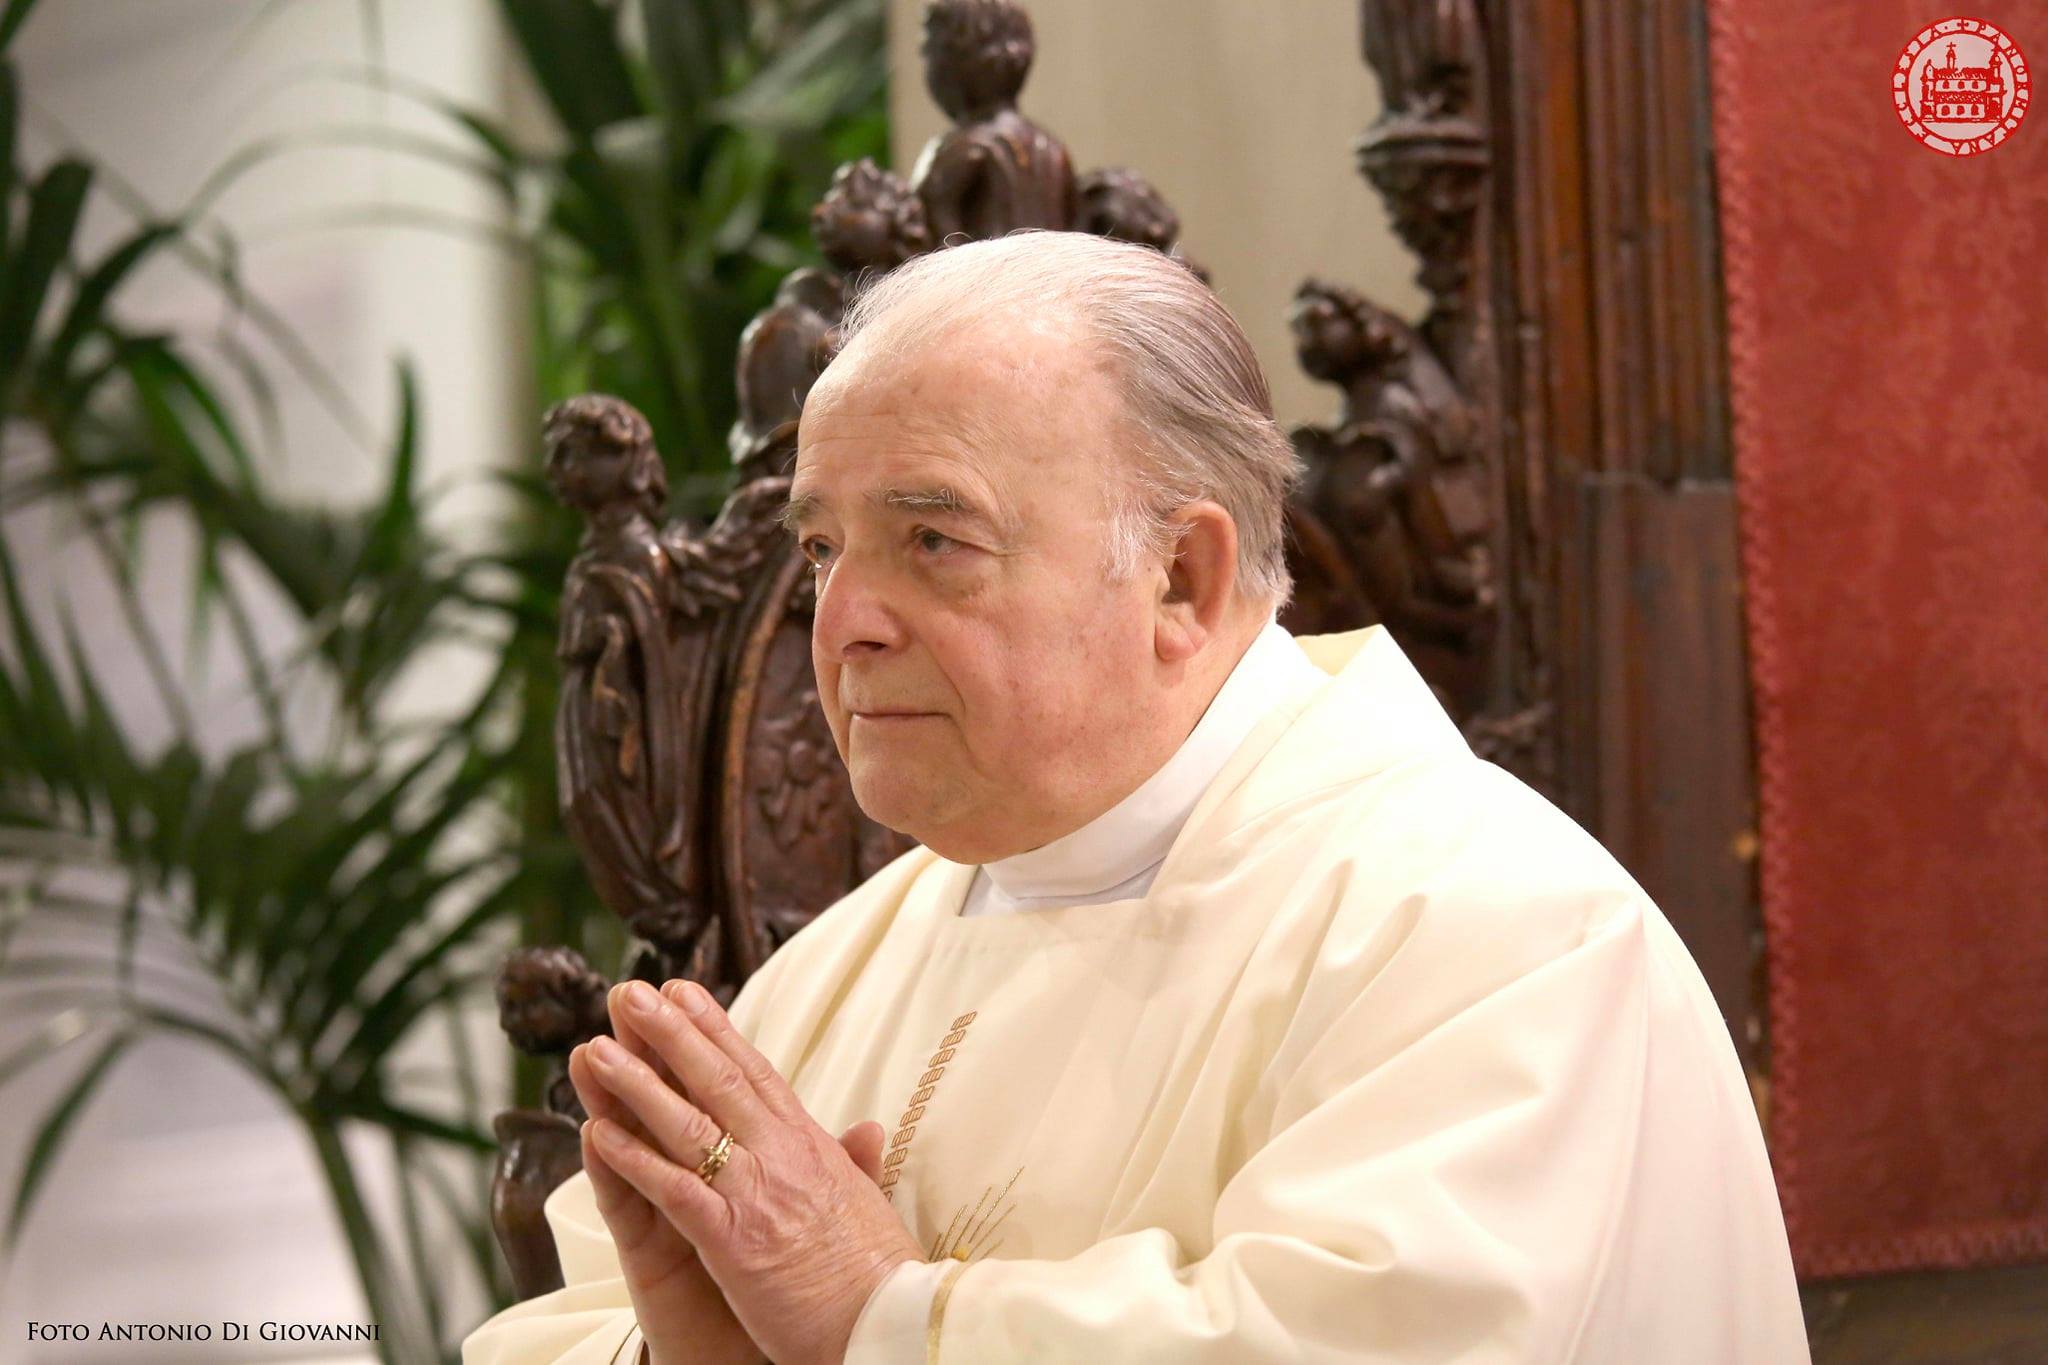 “Presbitero di grandi qualità umane e servitore della Chiesa”, morto monsignor Salvatore Lo Monte: lutto per l’Arcidiocesi di Palermo